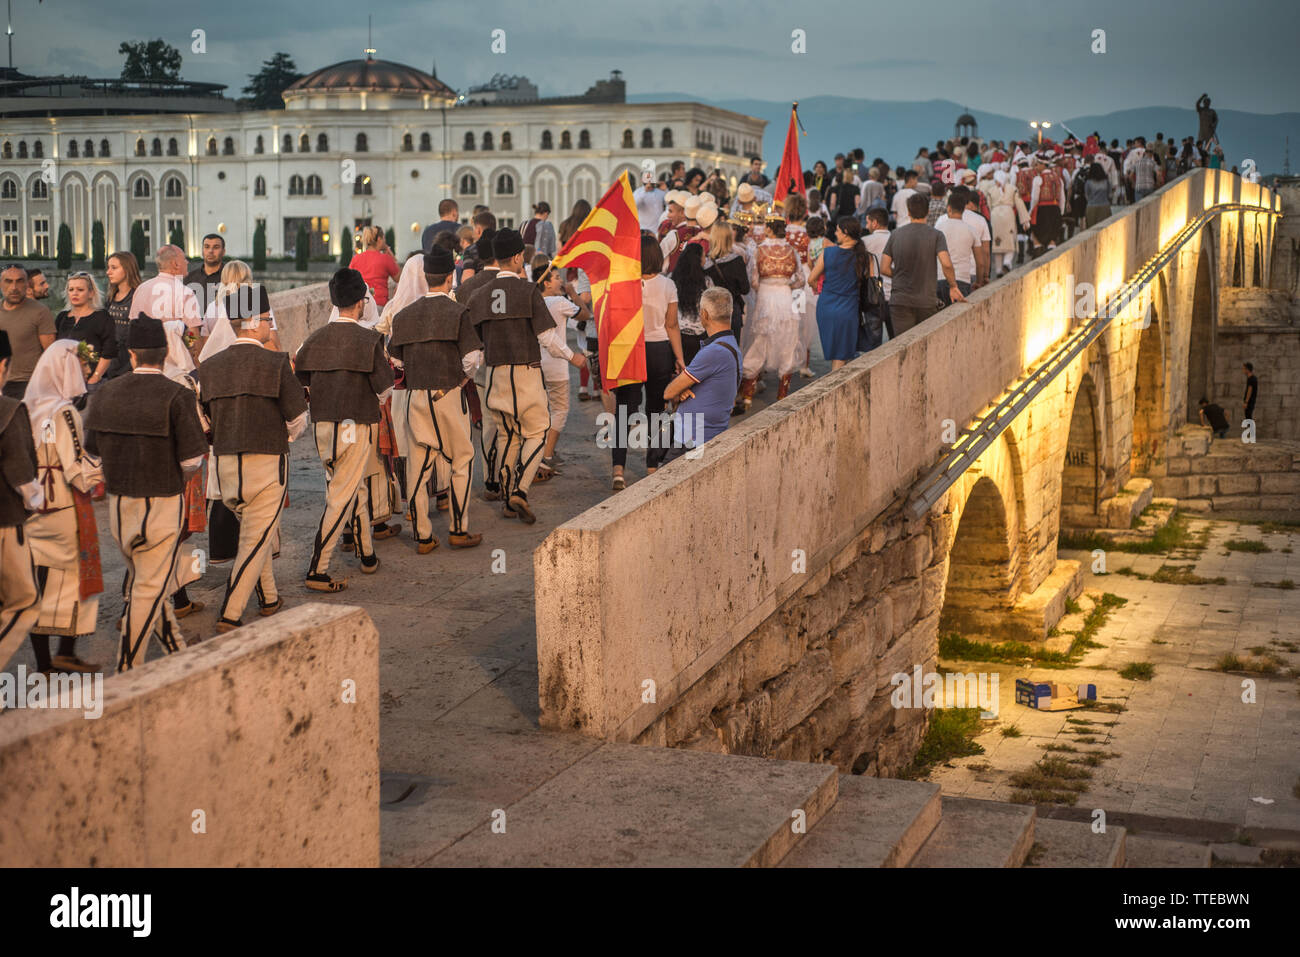 SKOPJE, macedonia de agosto 28,2018: los participantes del Festival Internacional de Música & Folk-Dance o Skopje Fest cruzar el puente de piedra en una procesión. Foto de stock